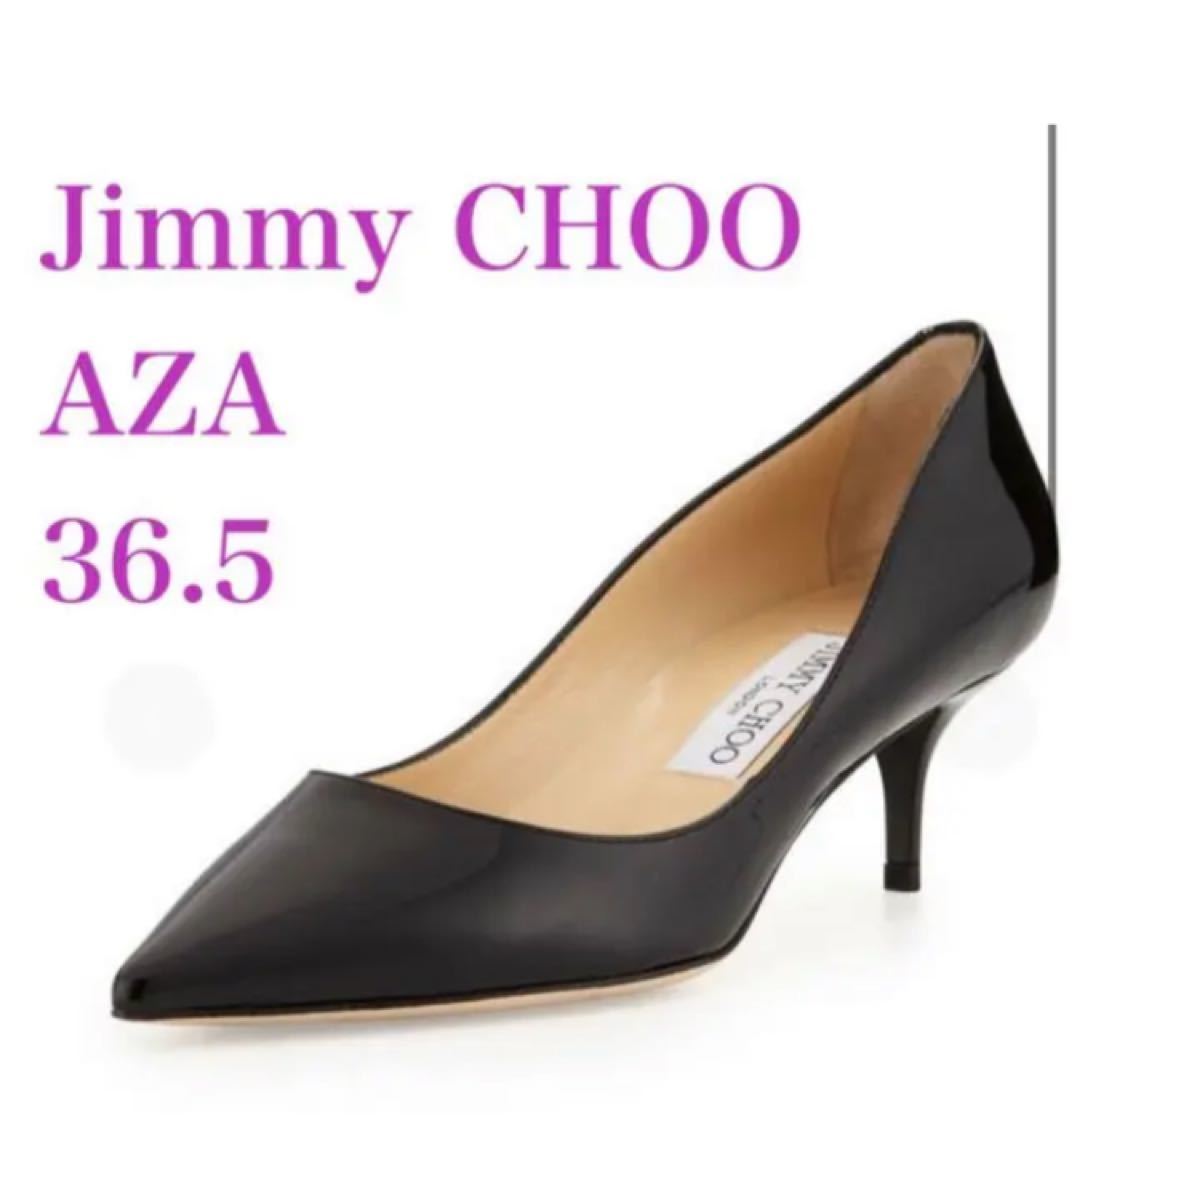 新品未使用 Jimmy Choo AZA ブラック パンプス レディースファッション